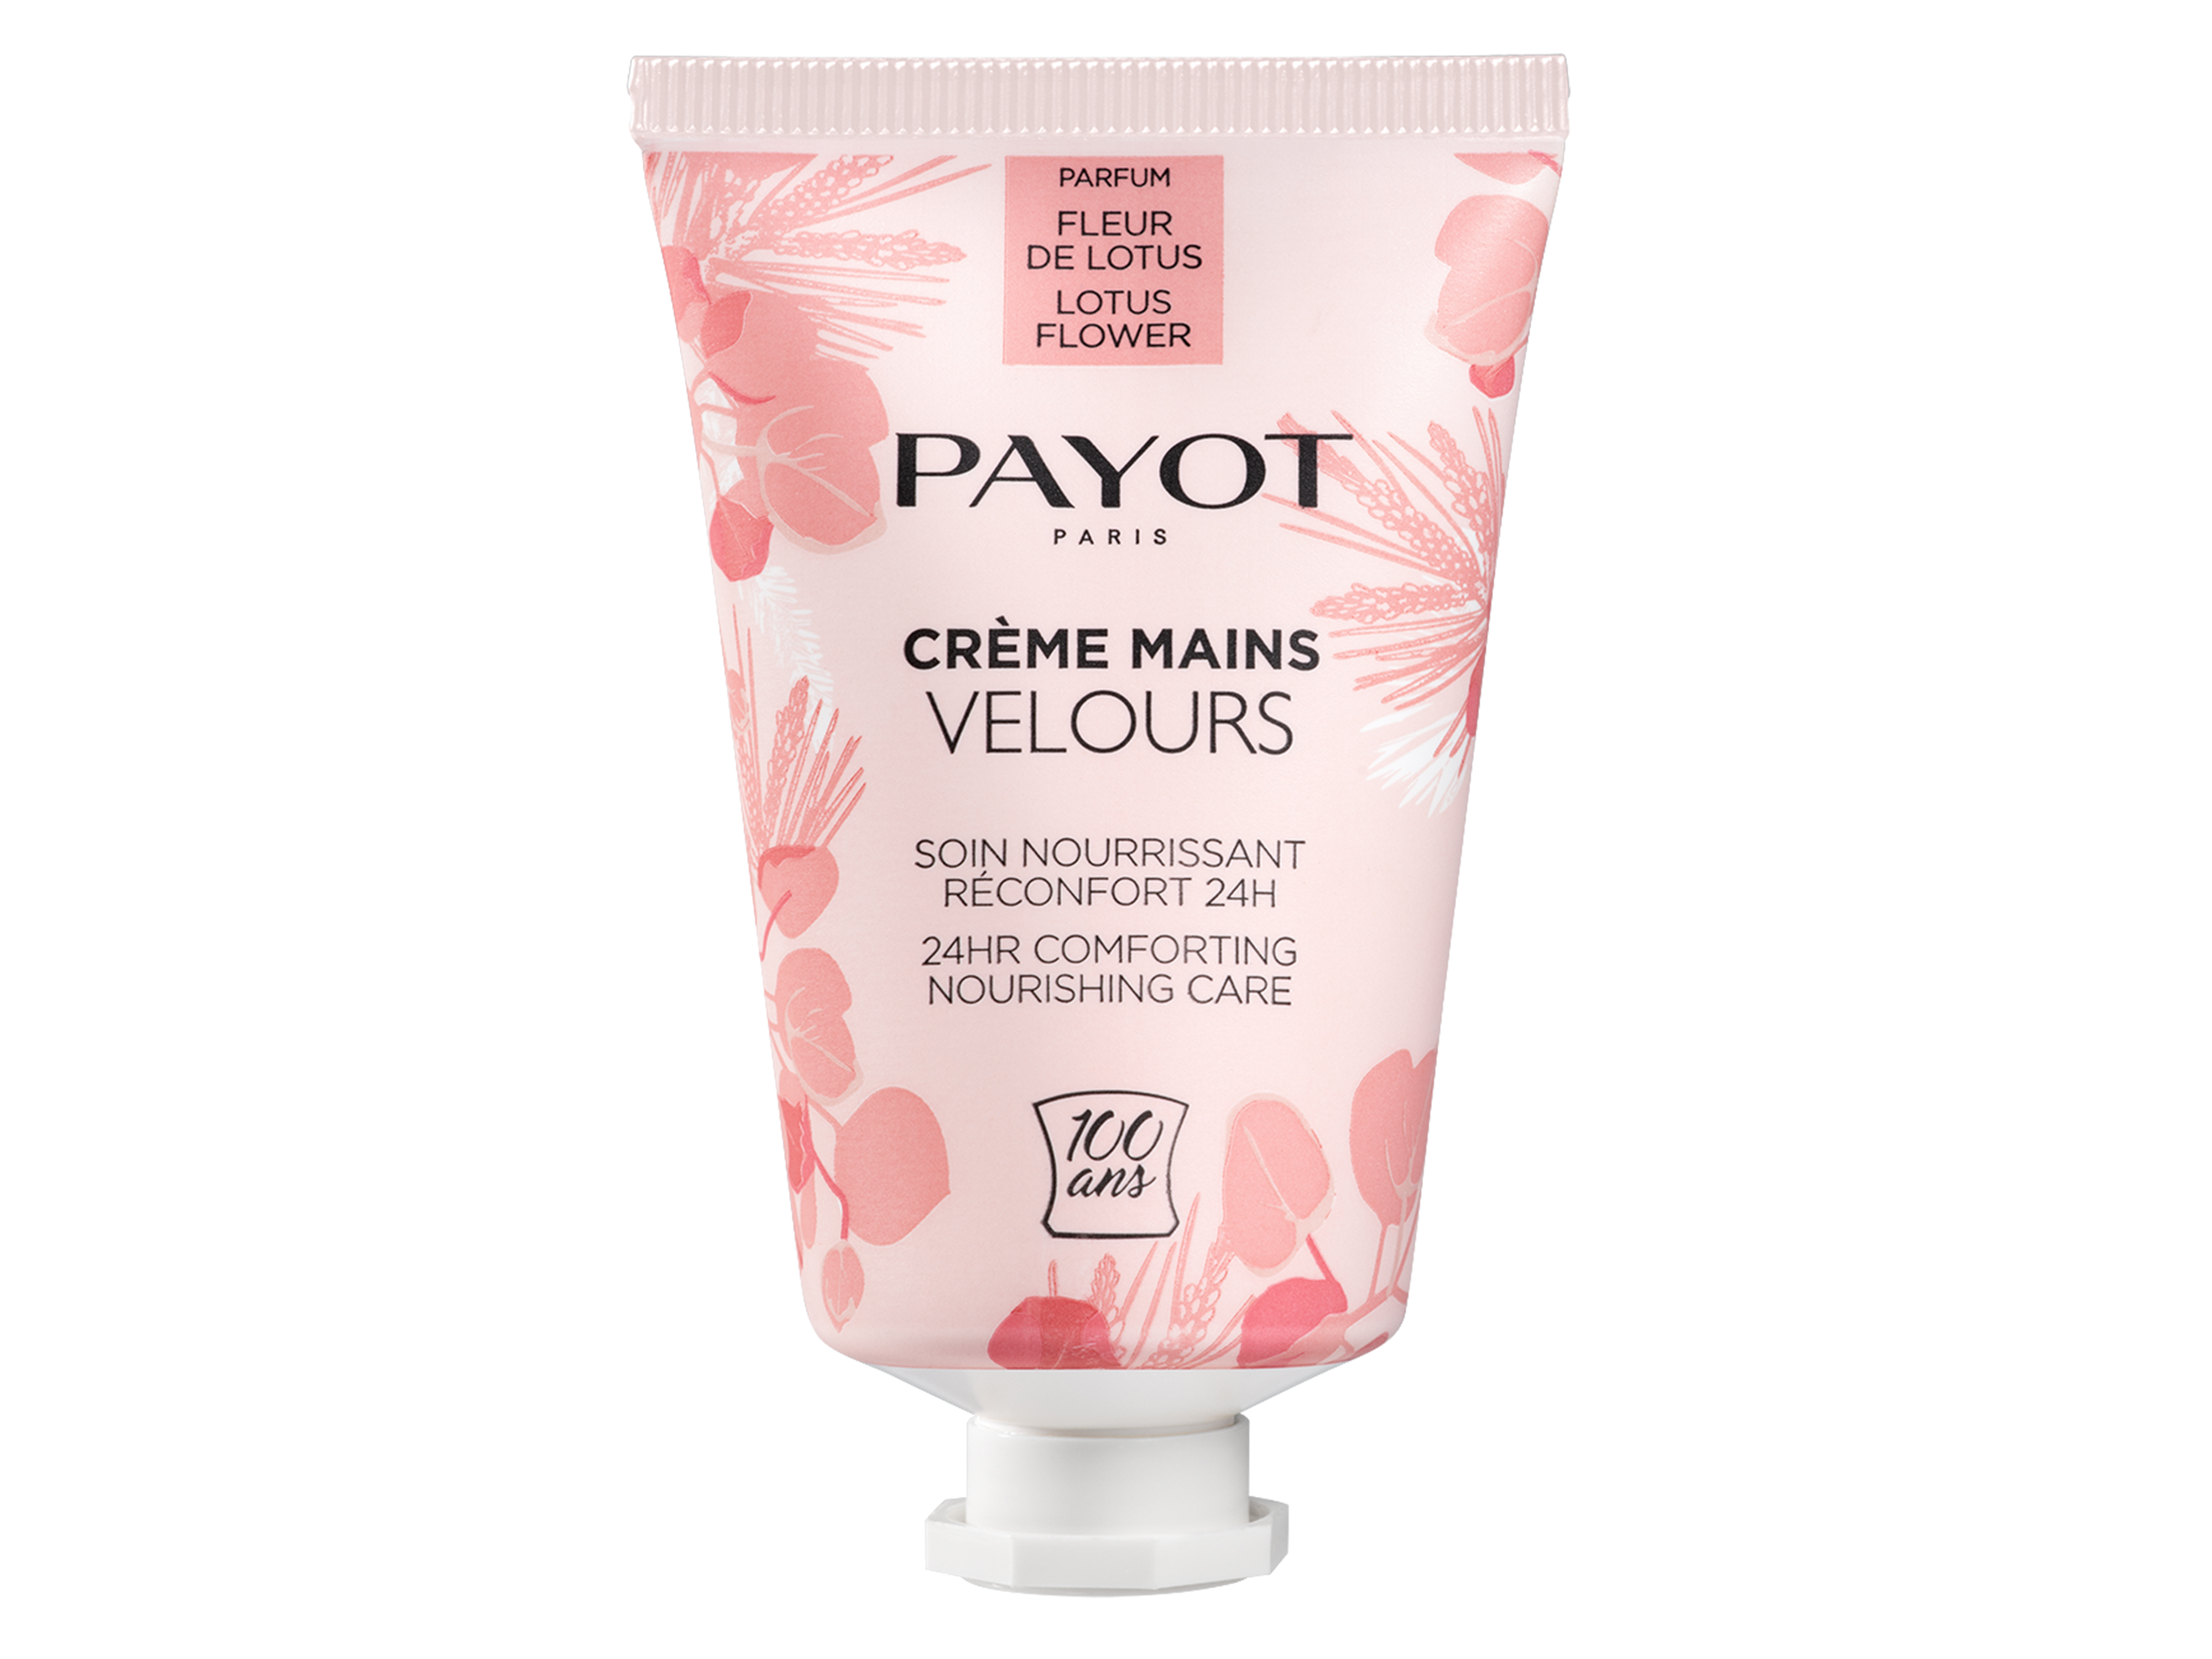 Payot Creme Mains Velours 24Hr Fleur de Lotus, 30 ml